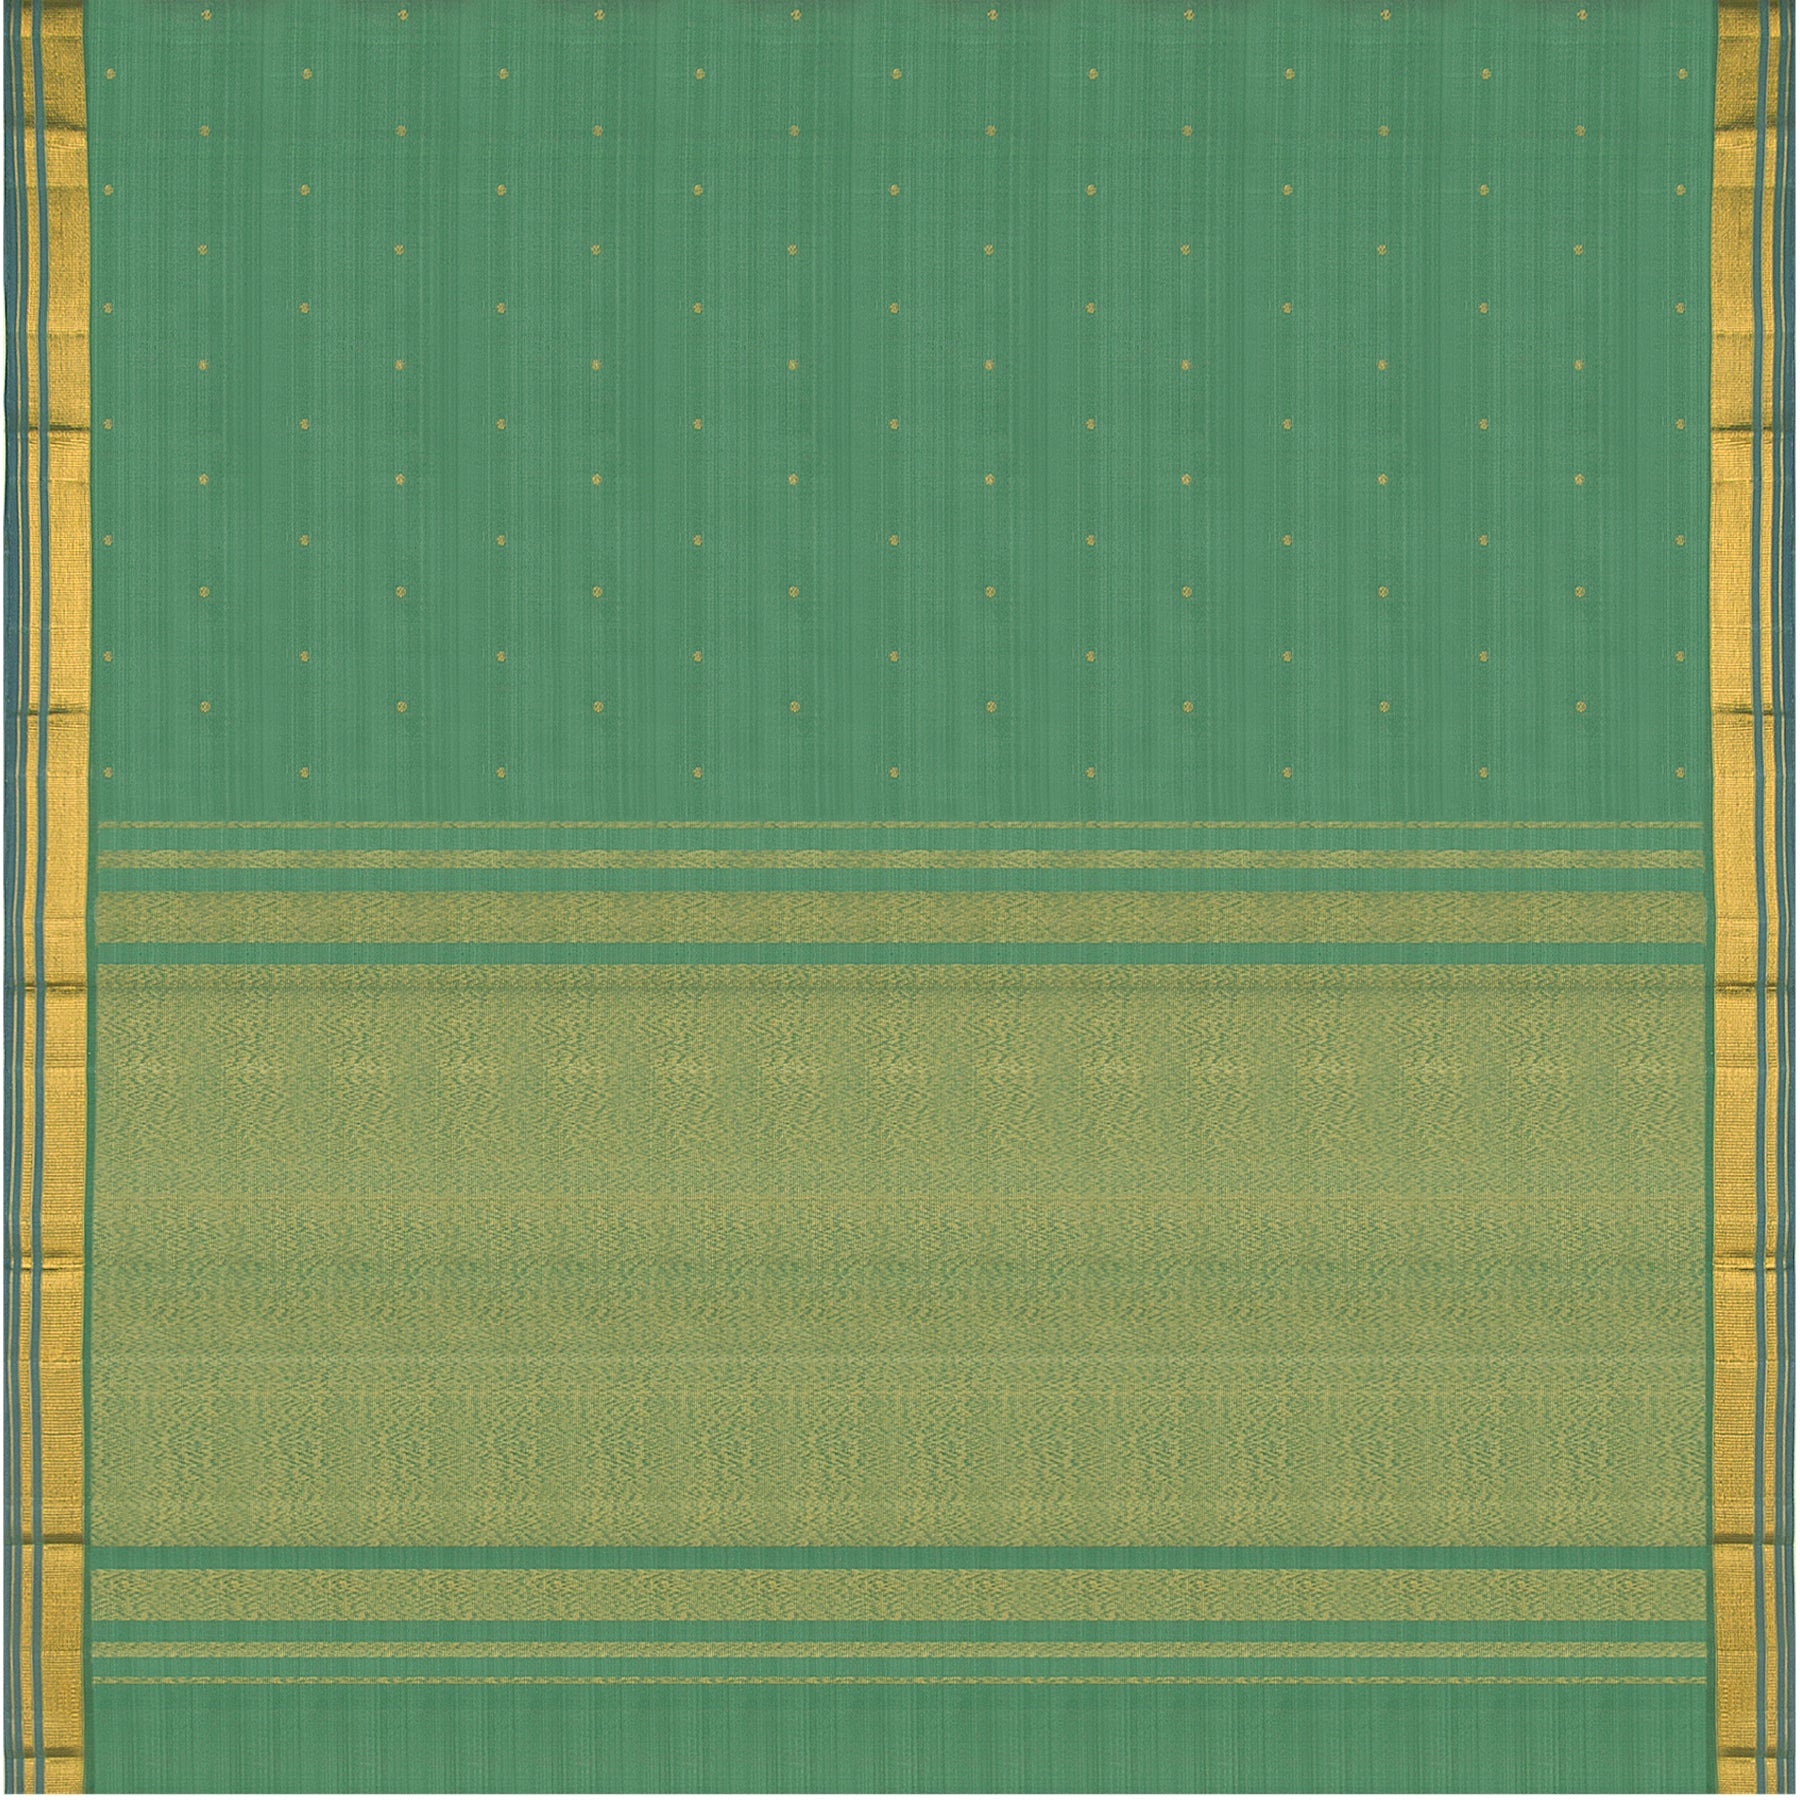 Kanakavalli Kanjivaram Silk Sari 23-611-HS001-11741 - Full View